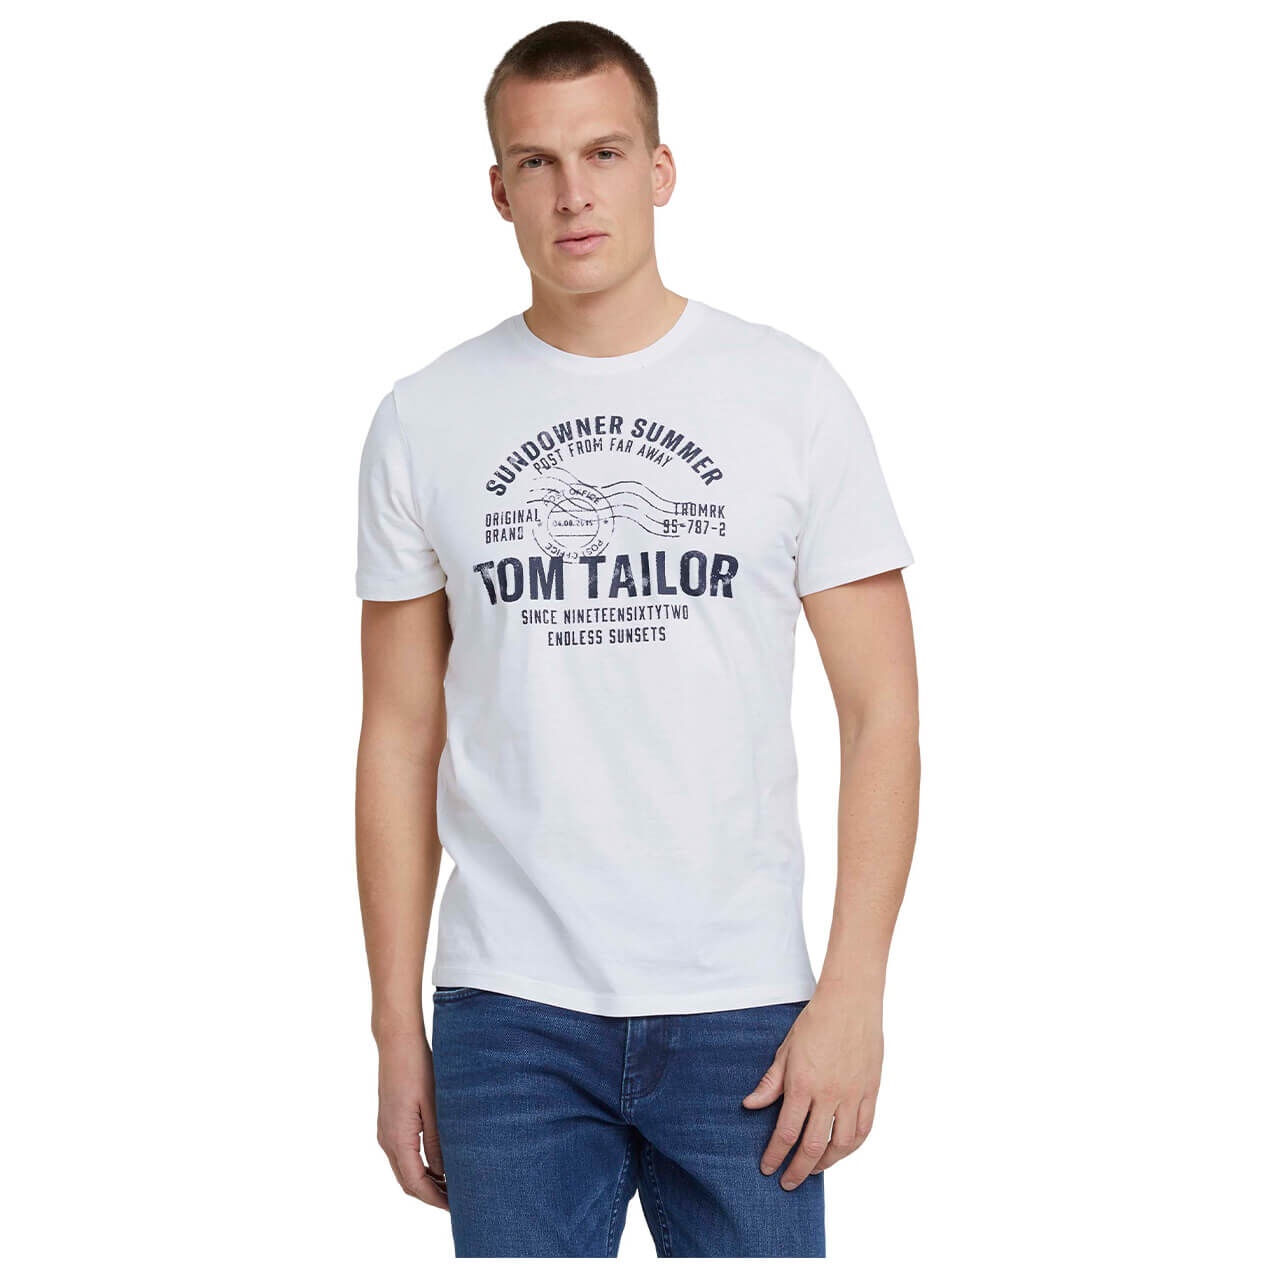 Tom Tailor T-Shirt für Herren in Weiß mit Print, FarbNr.: 10332